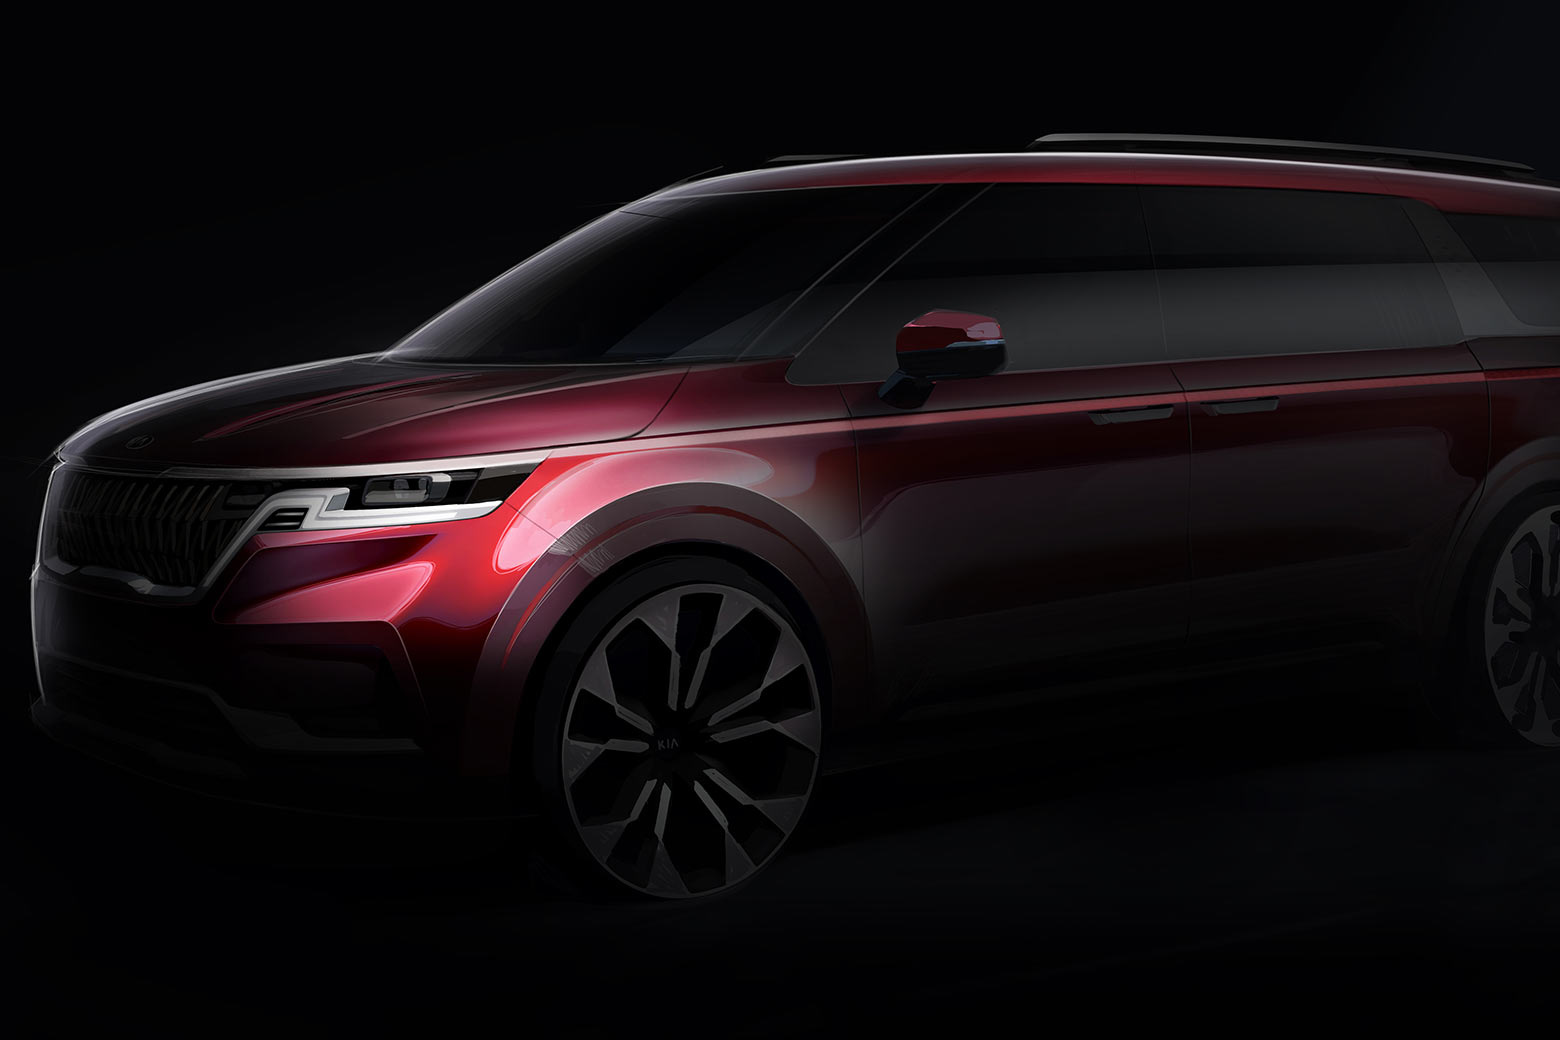 Kia Sedona thế hệ mới lần đầu lộ ảnh chính hãng: Rõ nét Range Rover, thiết kế kích thích hơn hẳn bản cũ